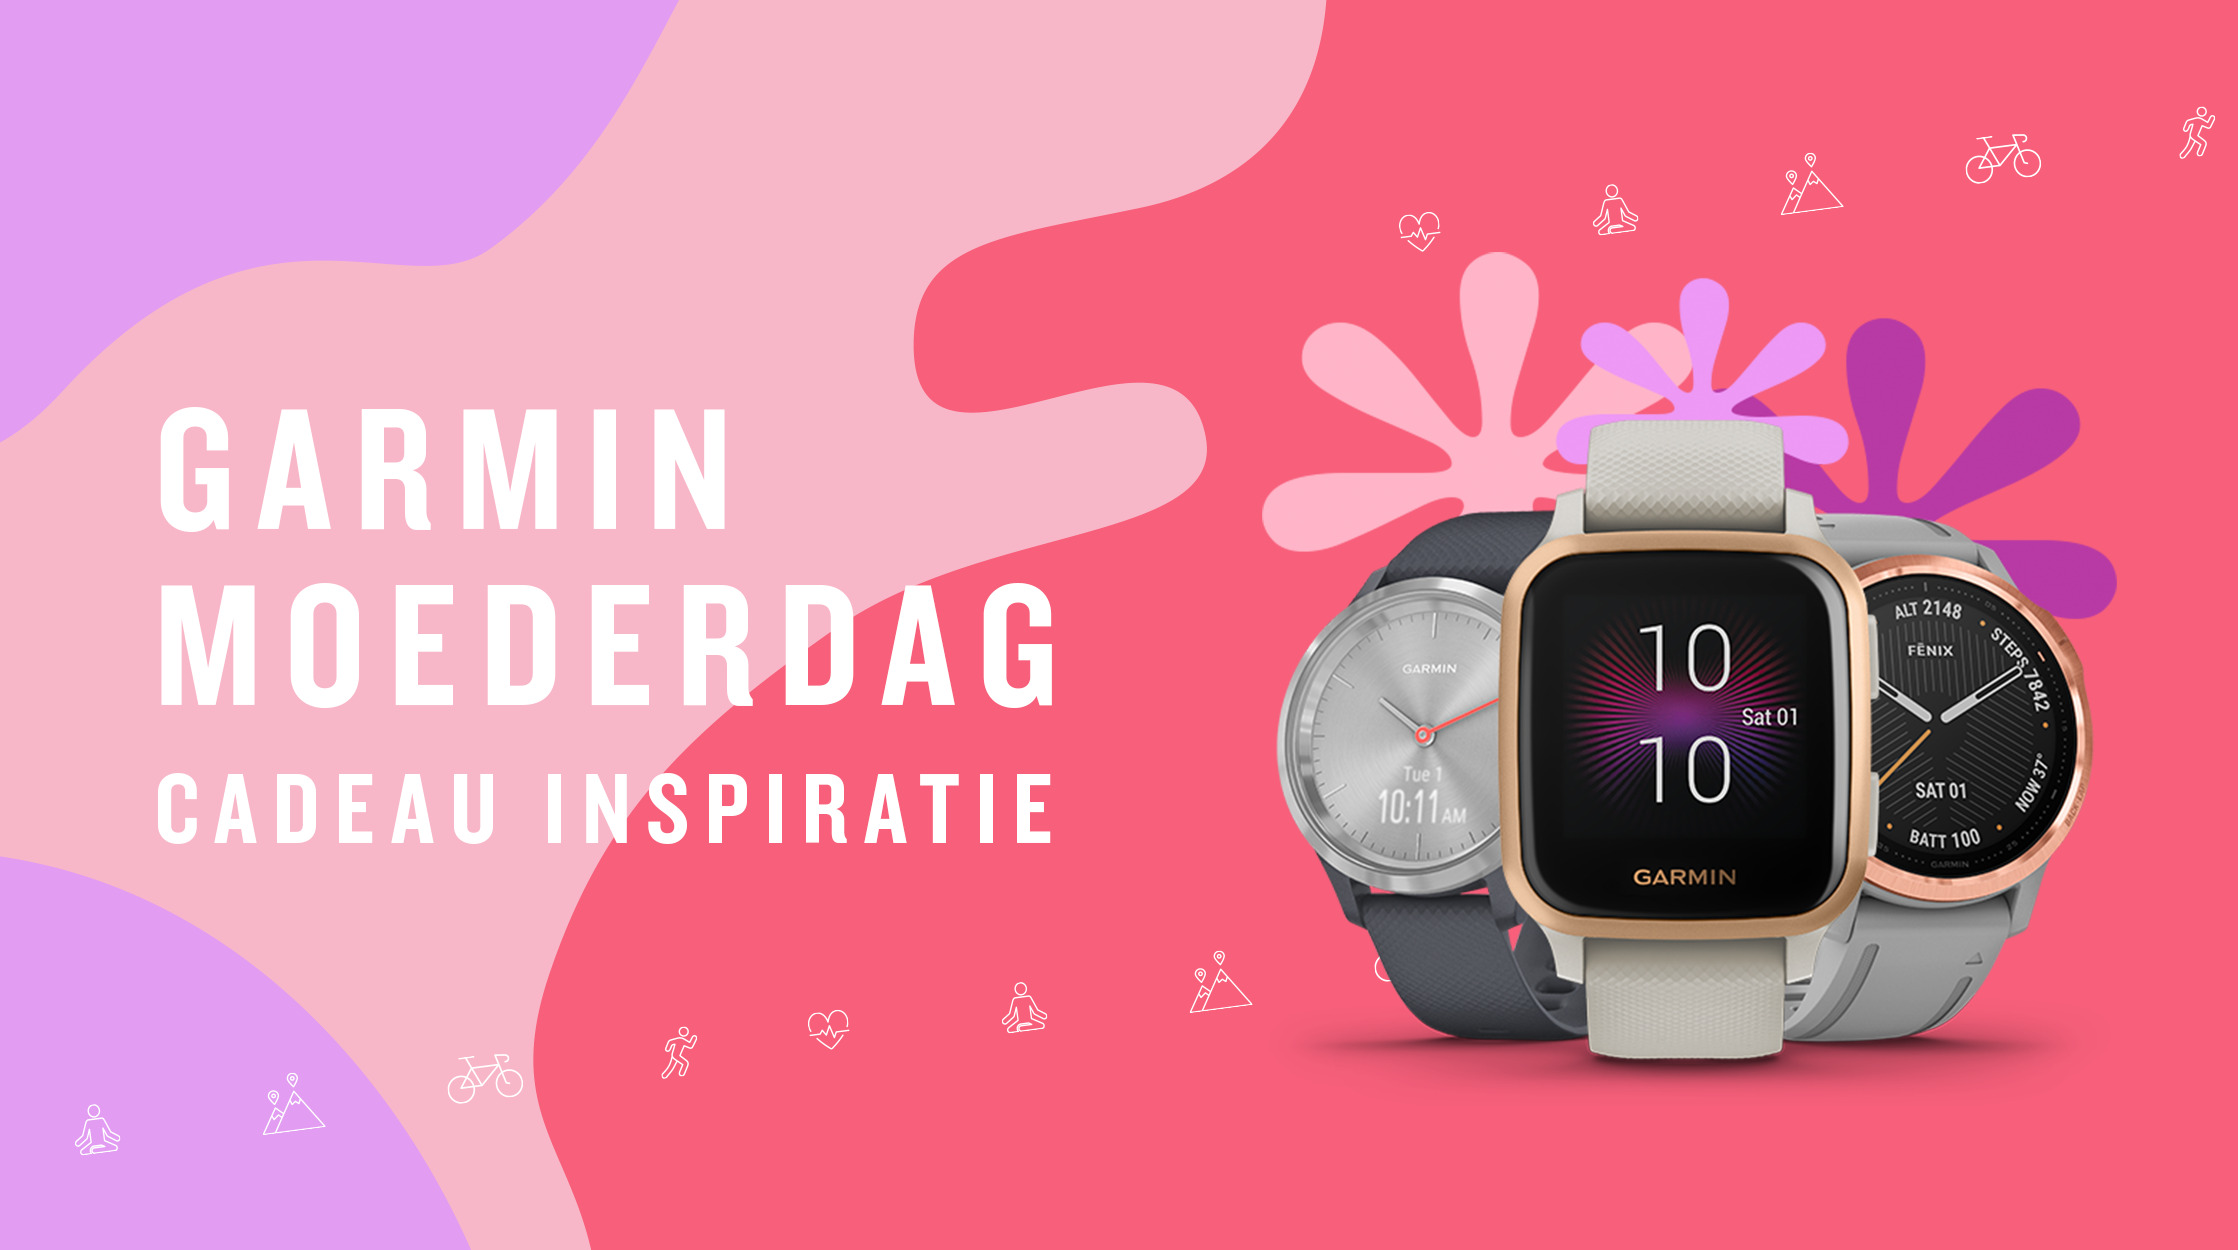 fenix 7 nieuwe smartwatch van Garmin